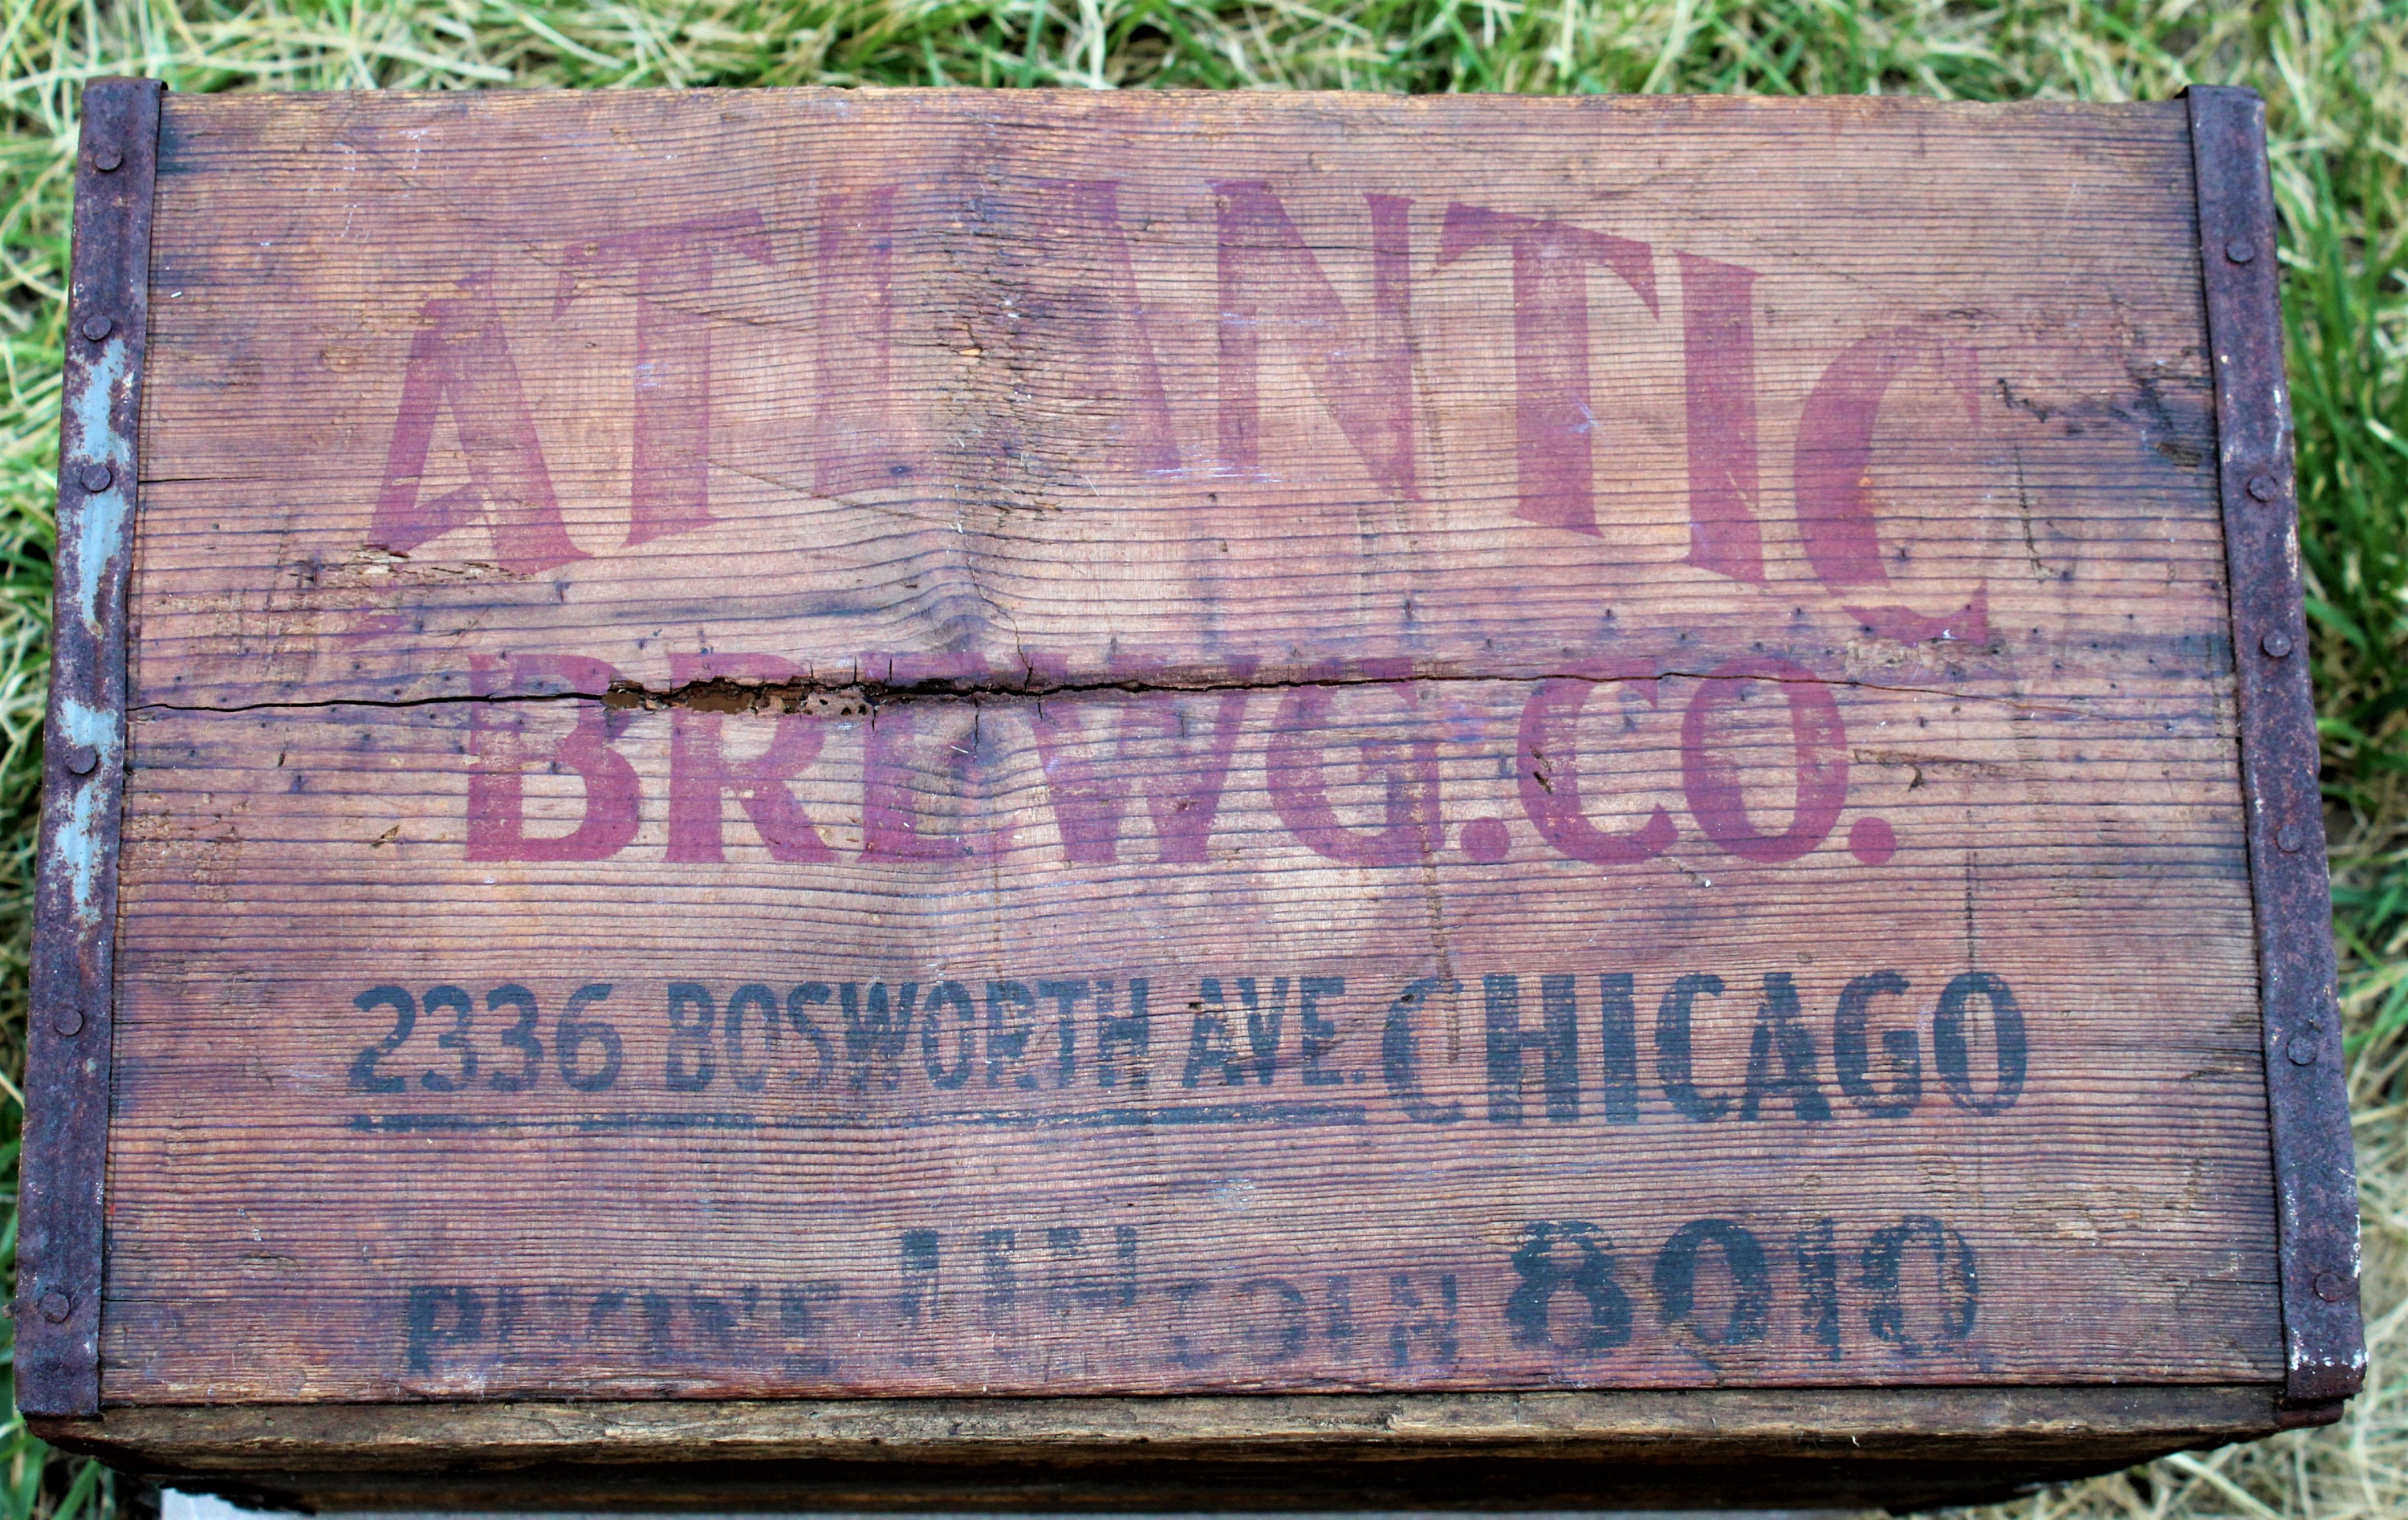 1942 Atlantic Ale and Beer Wooden Crate Atlanta Georgia